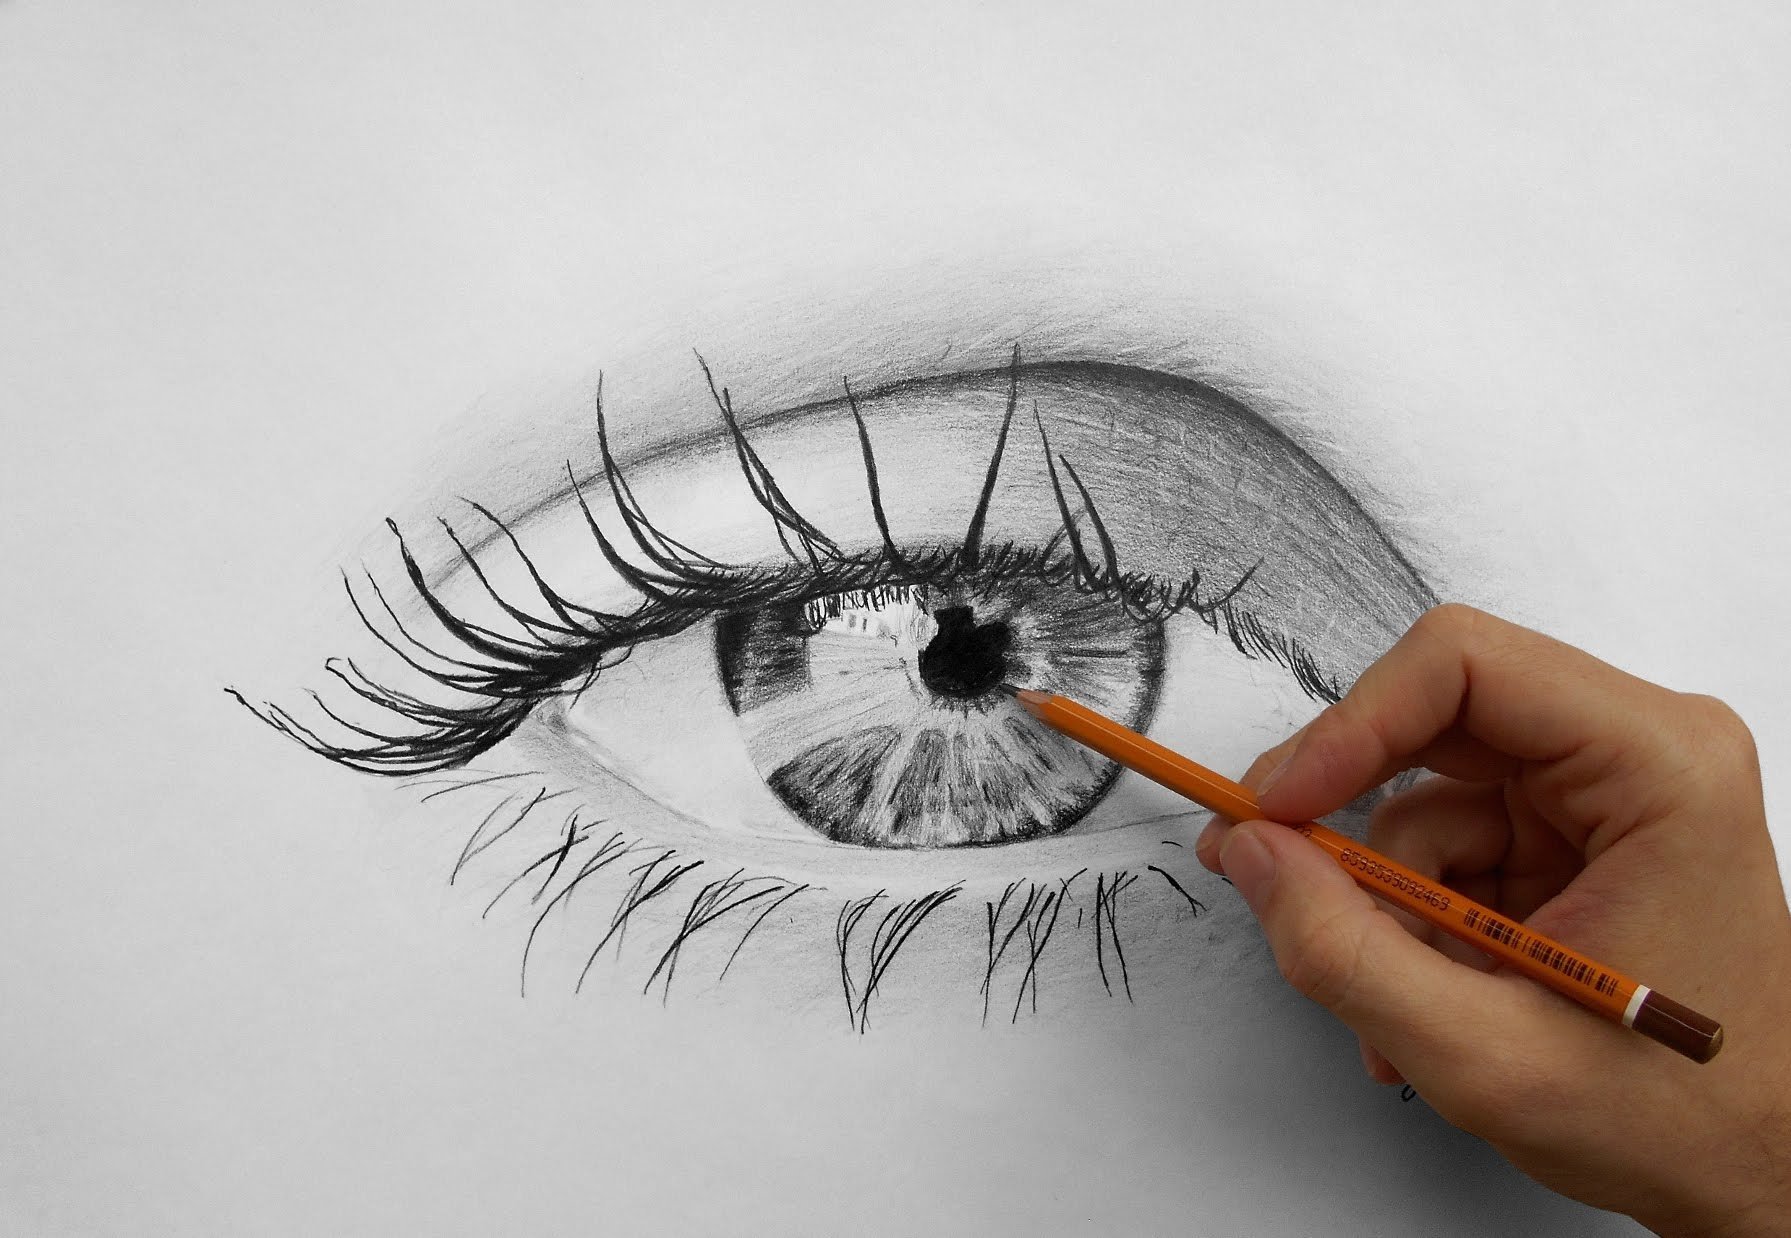 Картинки чтоб срисовывать. Рисование карандашом. Рисунки карандашом. Картинки рисунки карандашом. Красивое рисование карандашом.